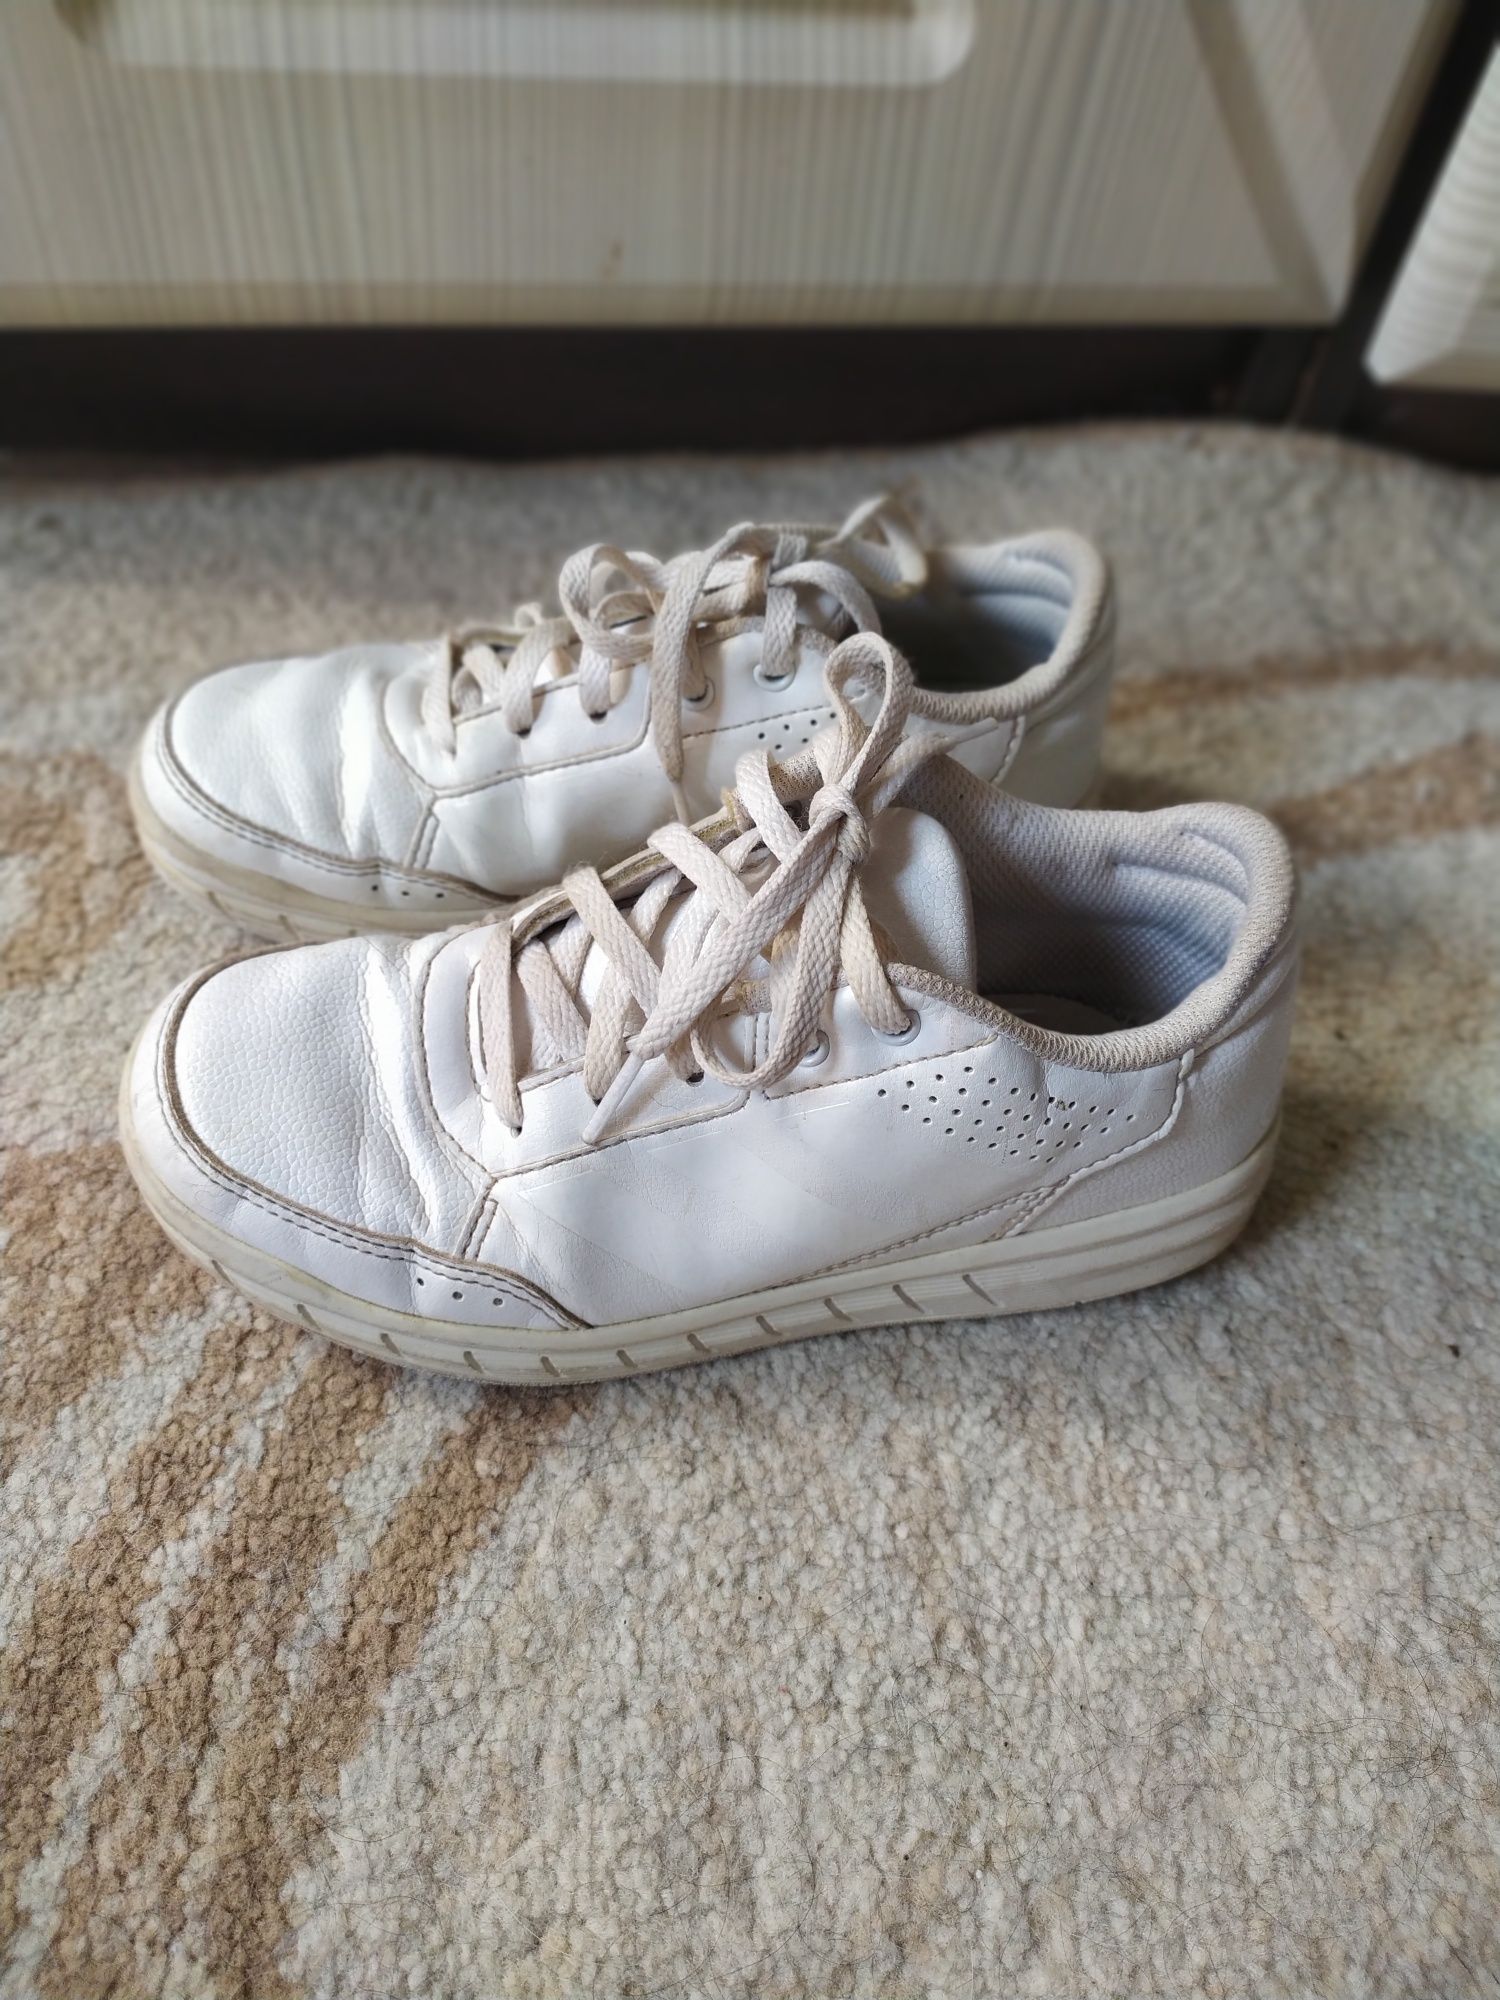 Кроссовки белые Adidas 20,5 см 33 размер